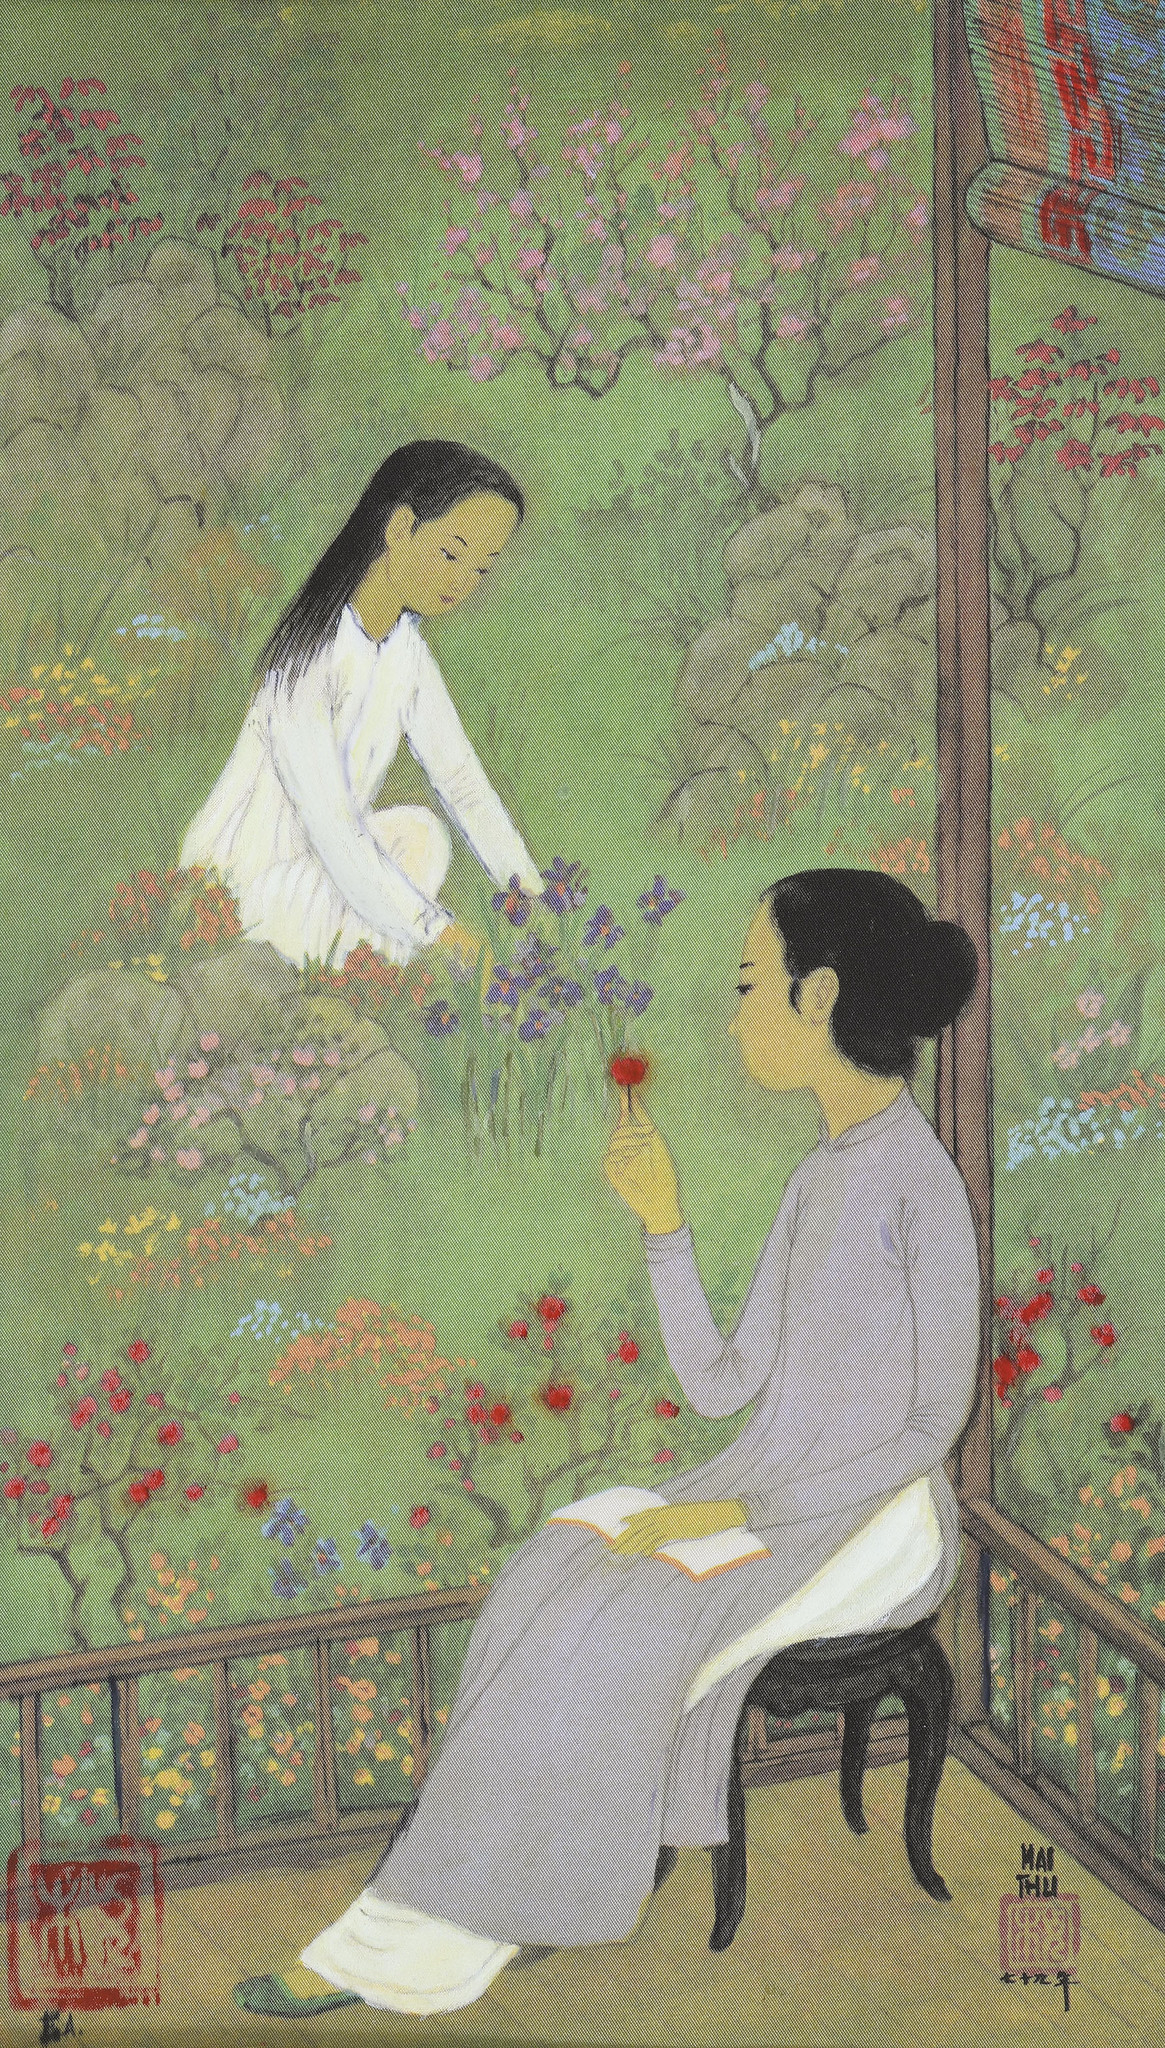 Bức tranh tựa đề "Le Printemps" (Mùa xuân) của Mai Trung Thứ, vẽ hai thiếu nữ Việt trong vườn hoa mùa xuân.